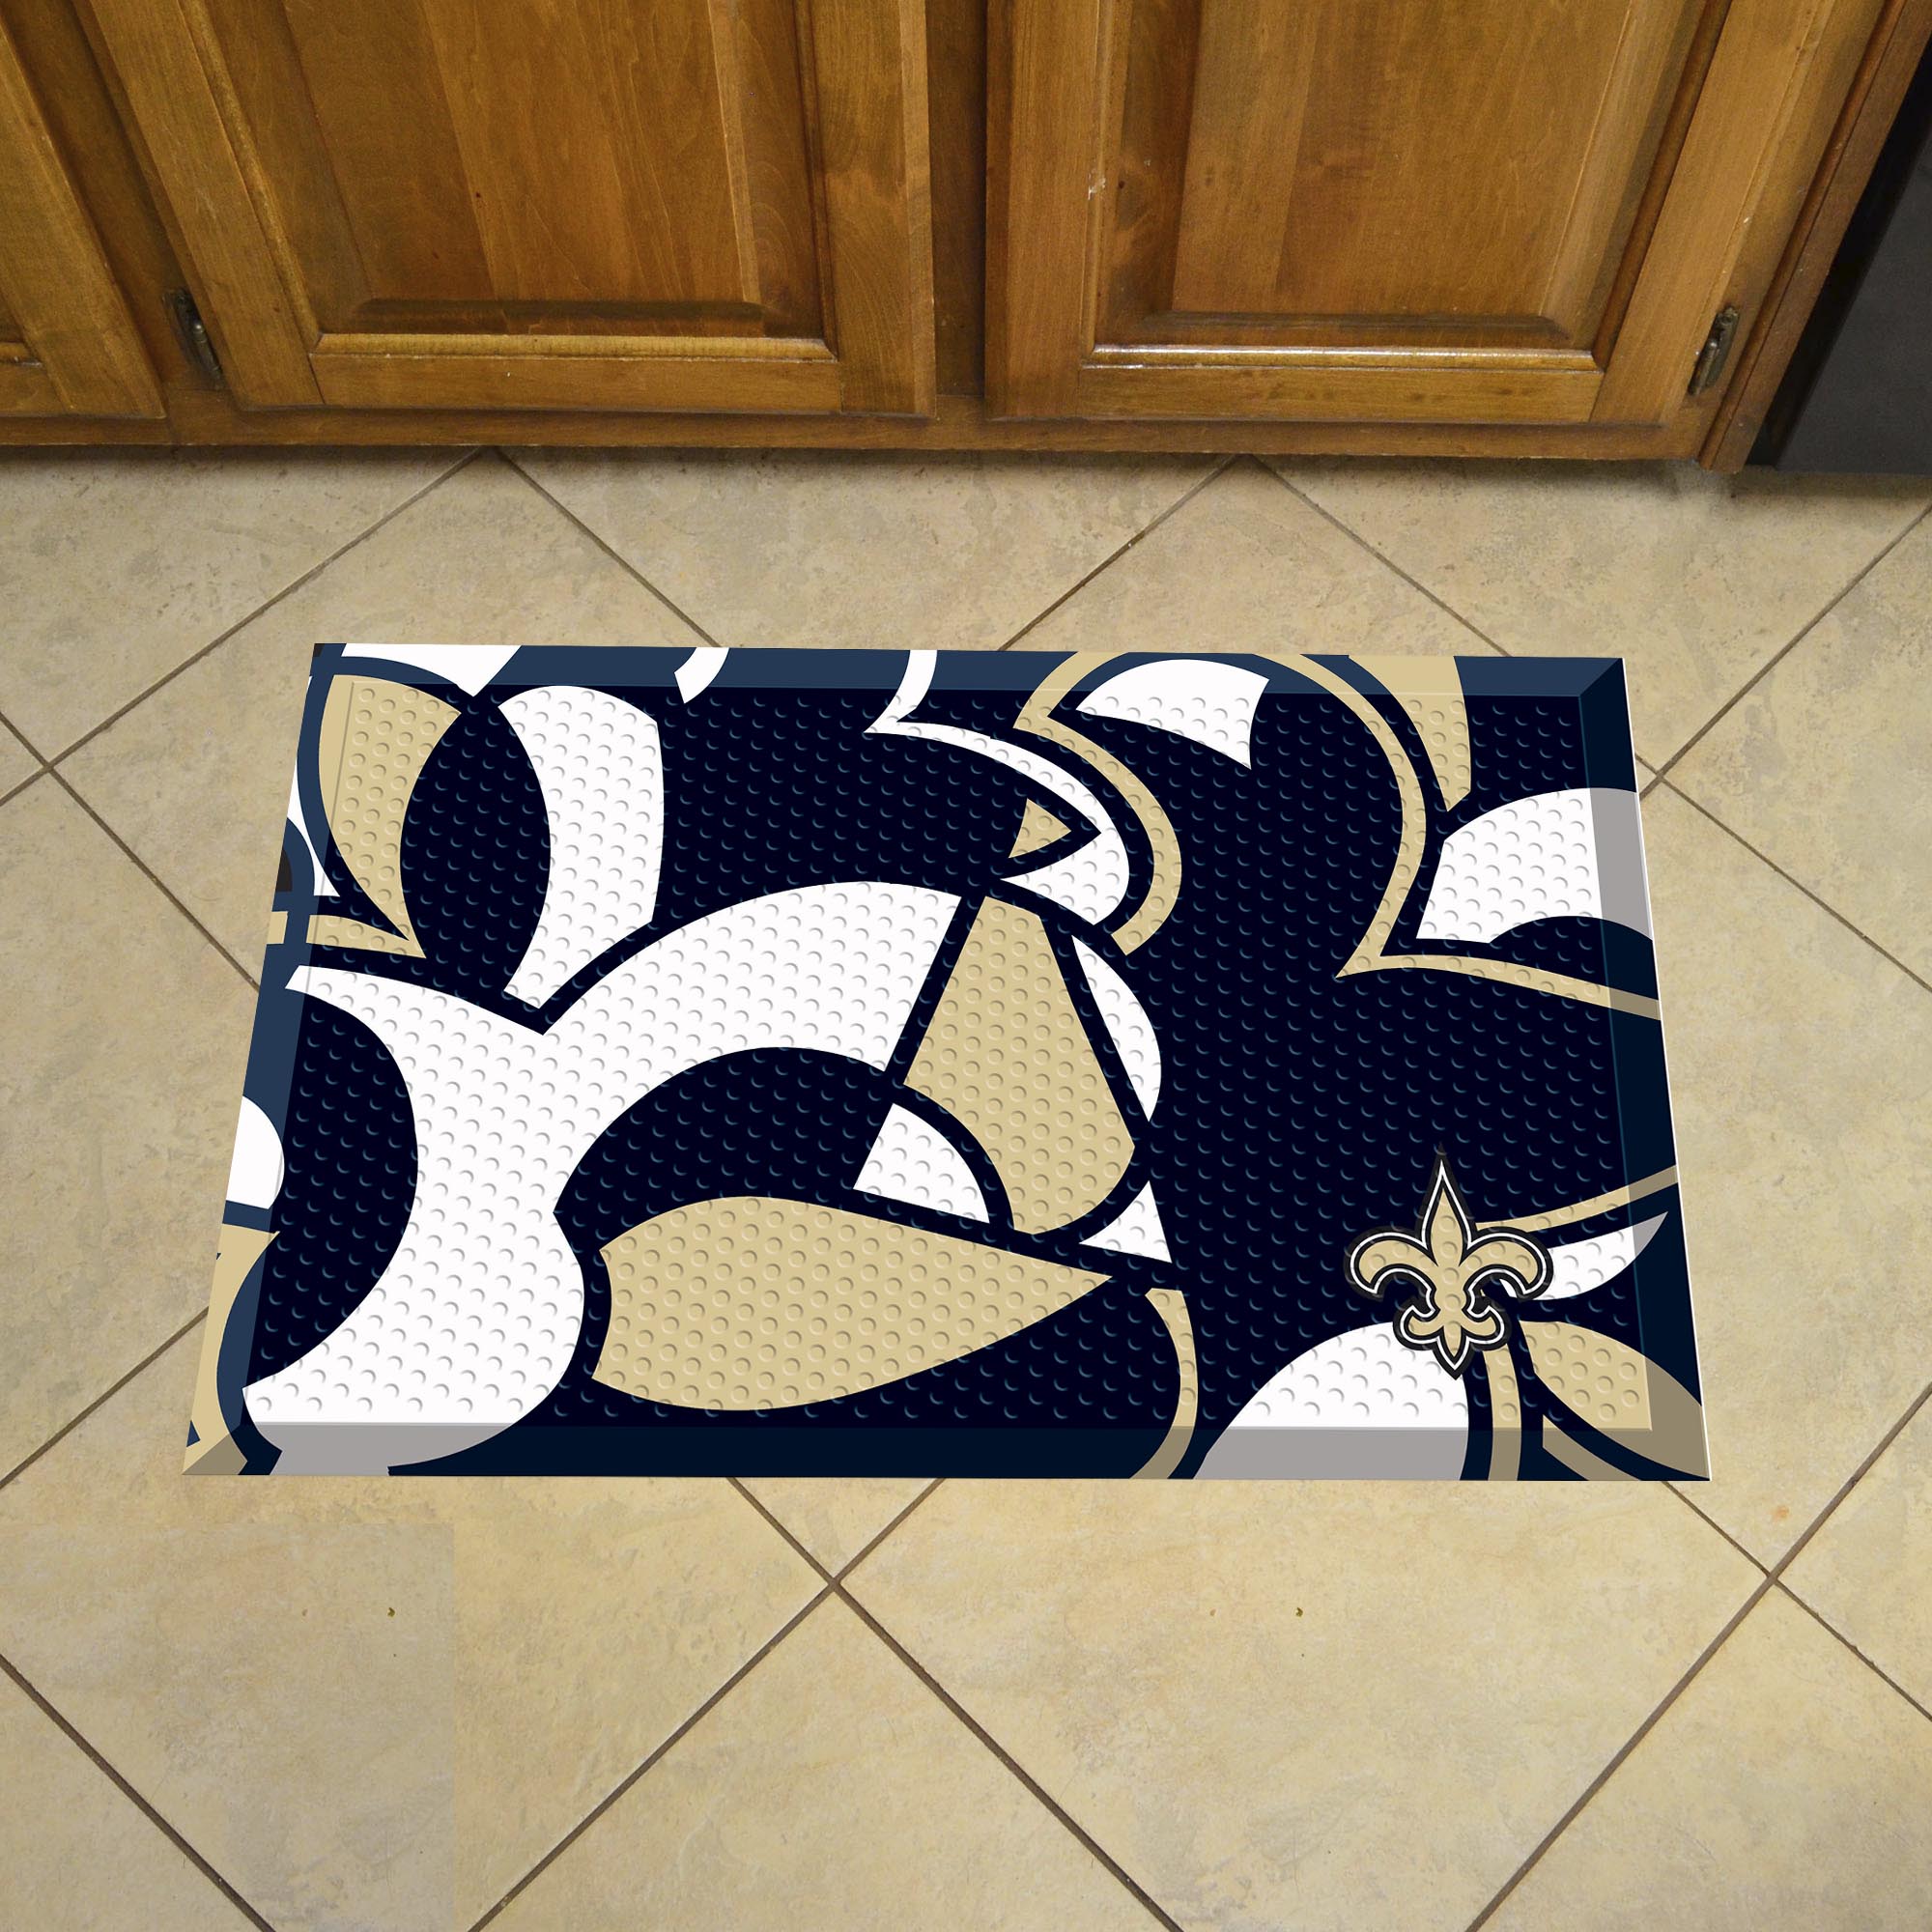 New Orleans Saints Quick Snap Scrapper Doormat - 19 x 30 rubber